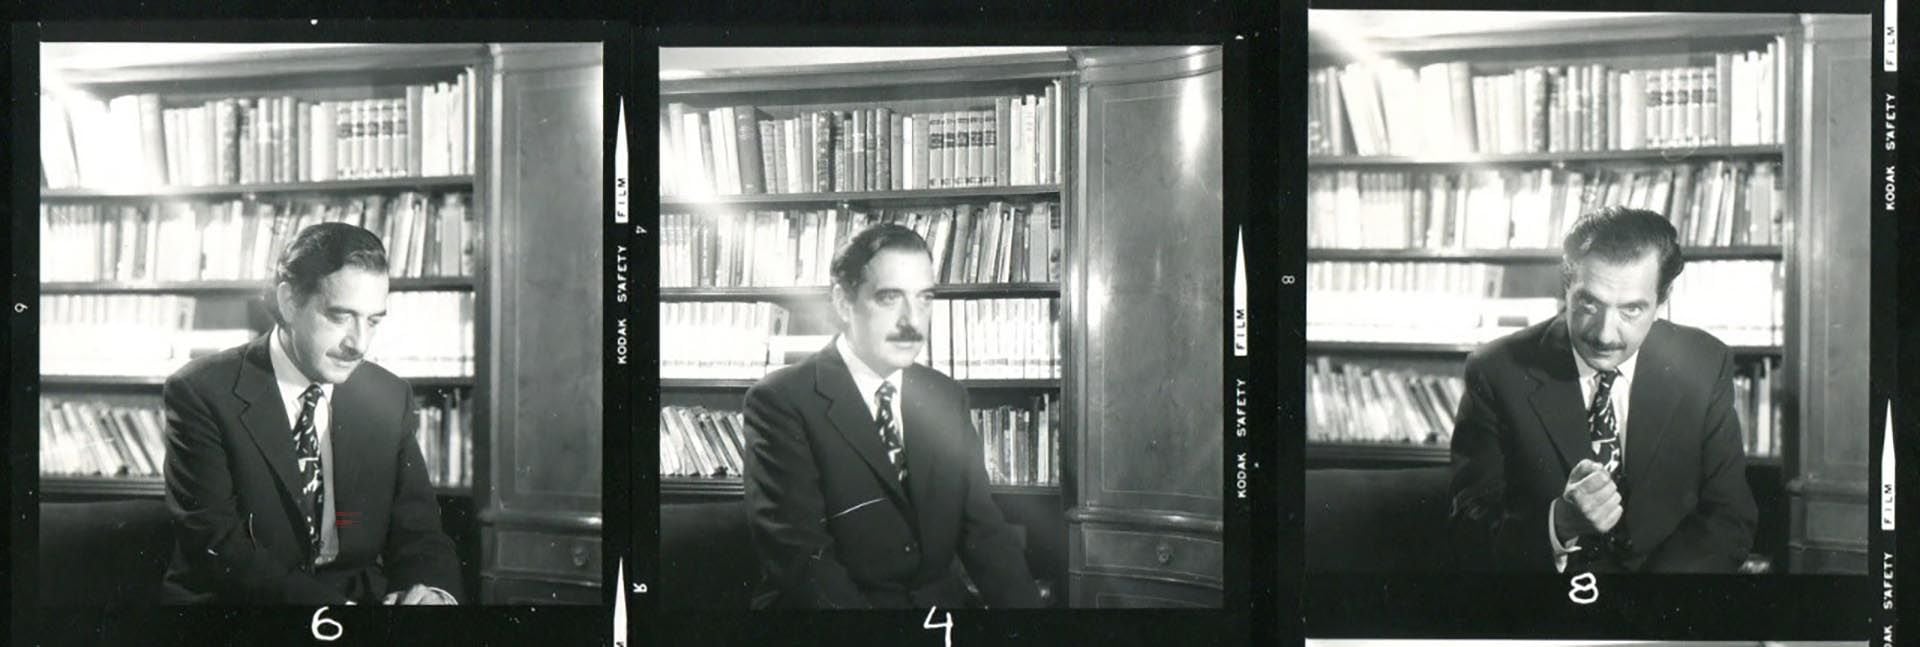 Imagen de "Raúl", la película sobre Alfonsín